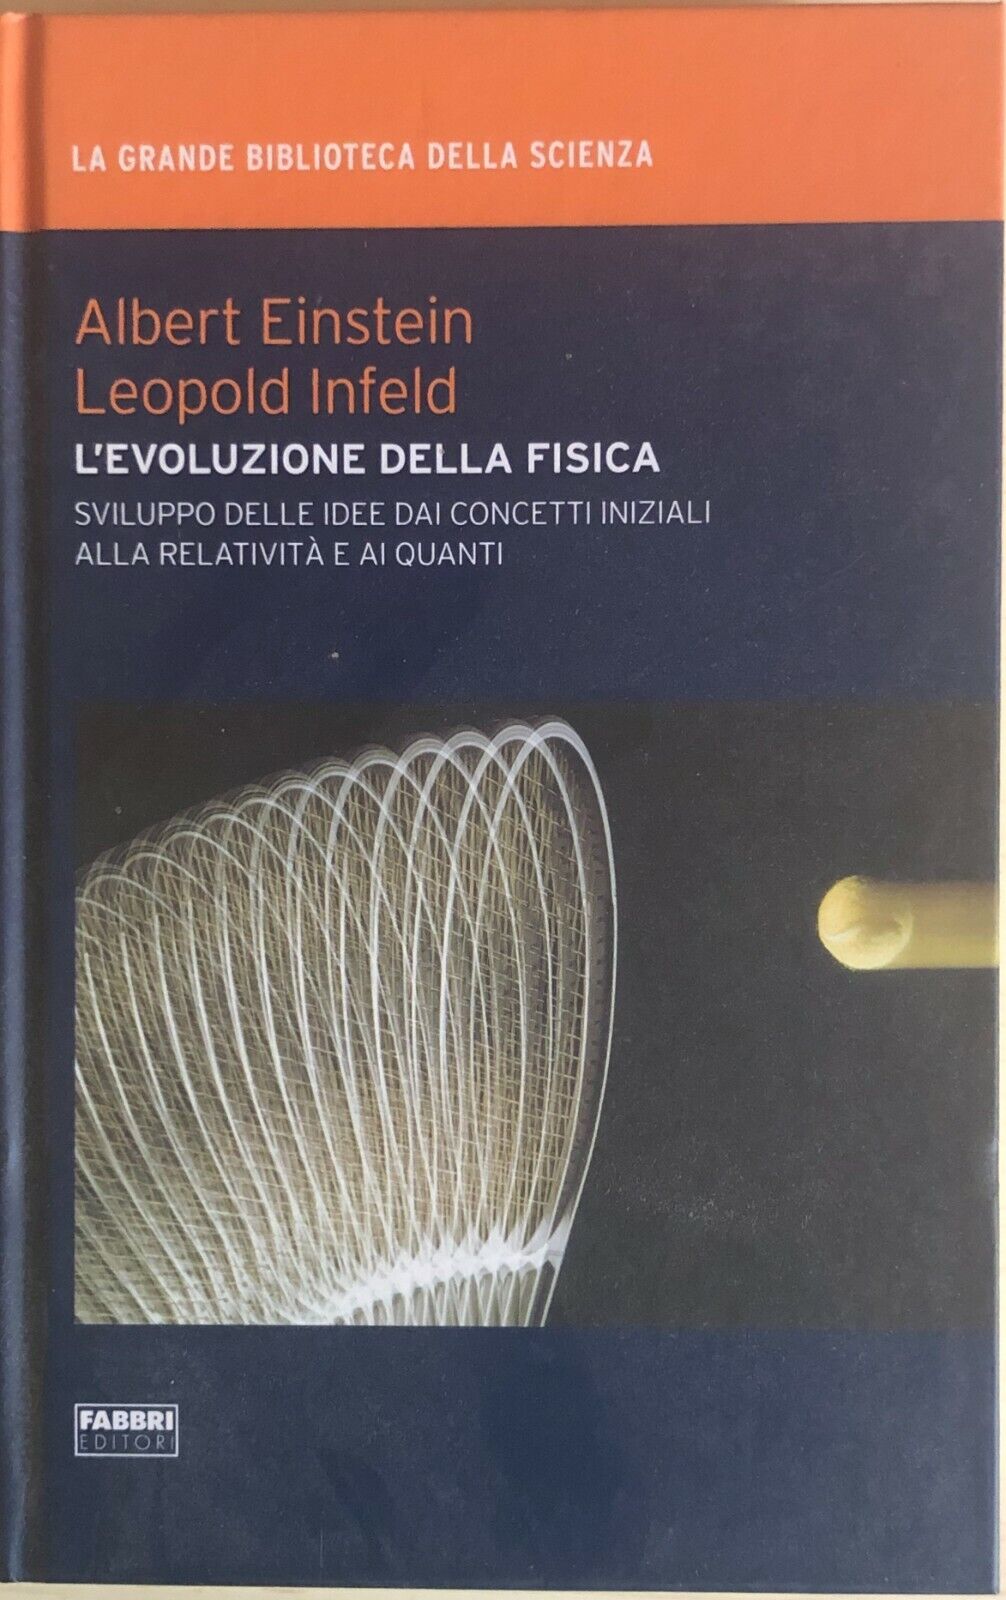 L'evoluzione della fisica di AA.VV., 2009, Fabbri editori